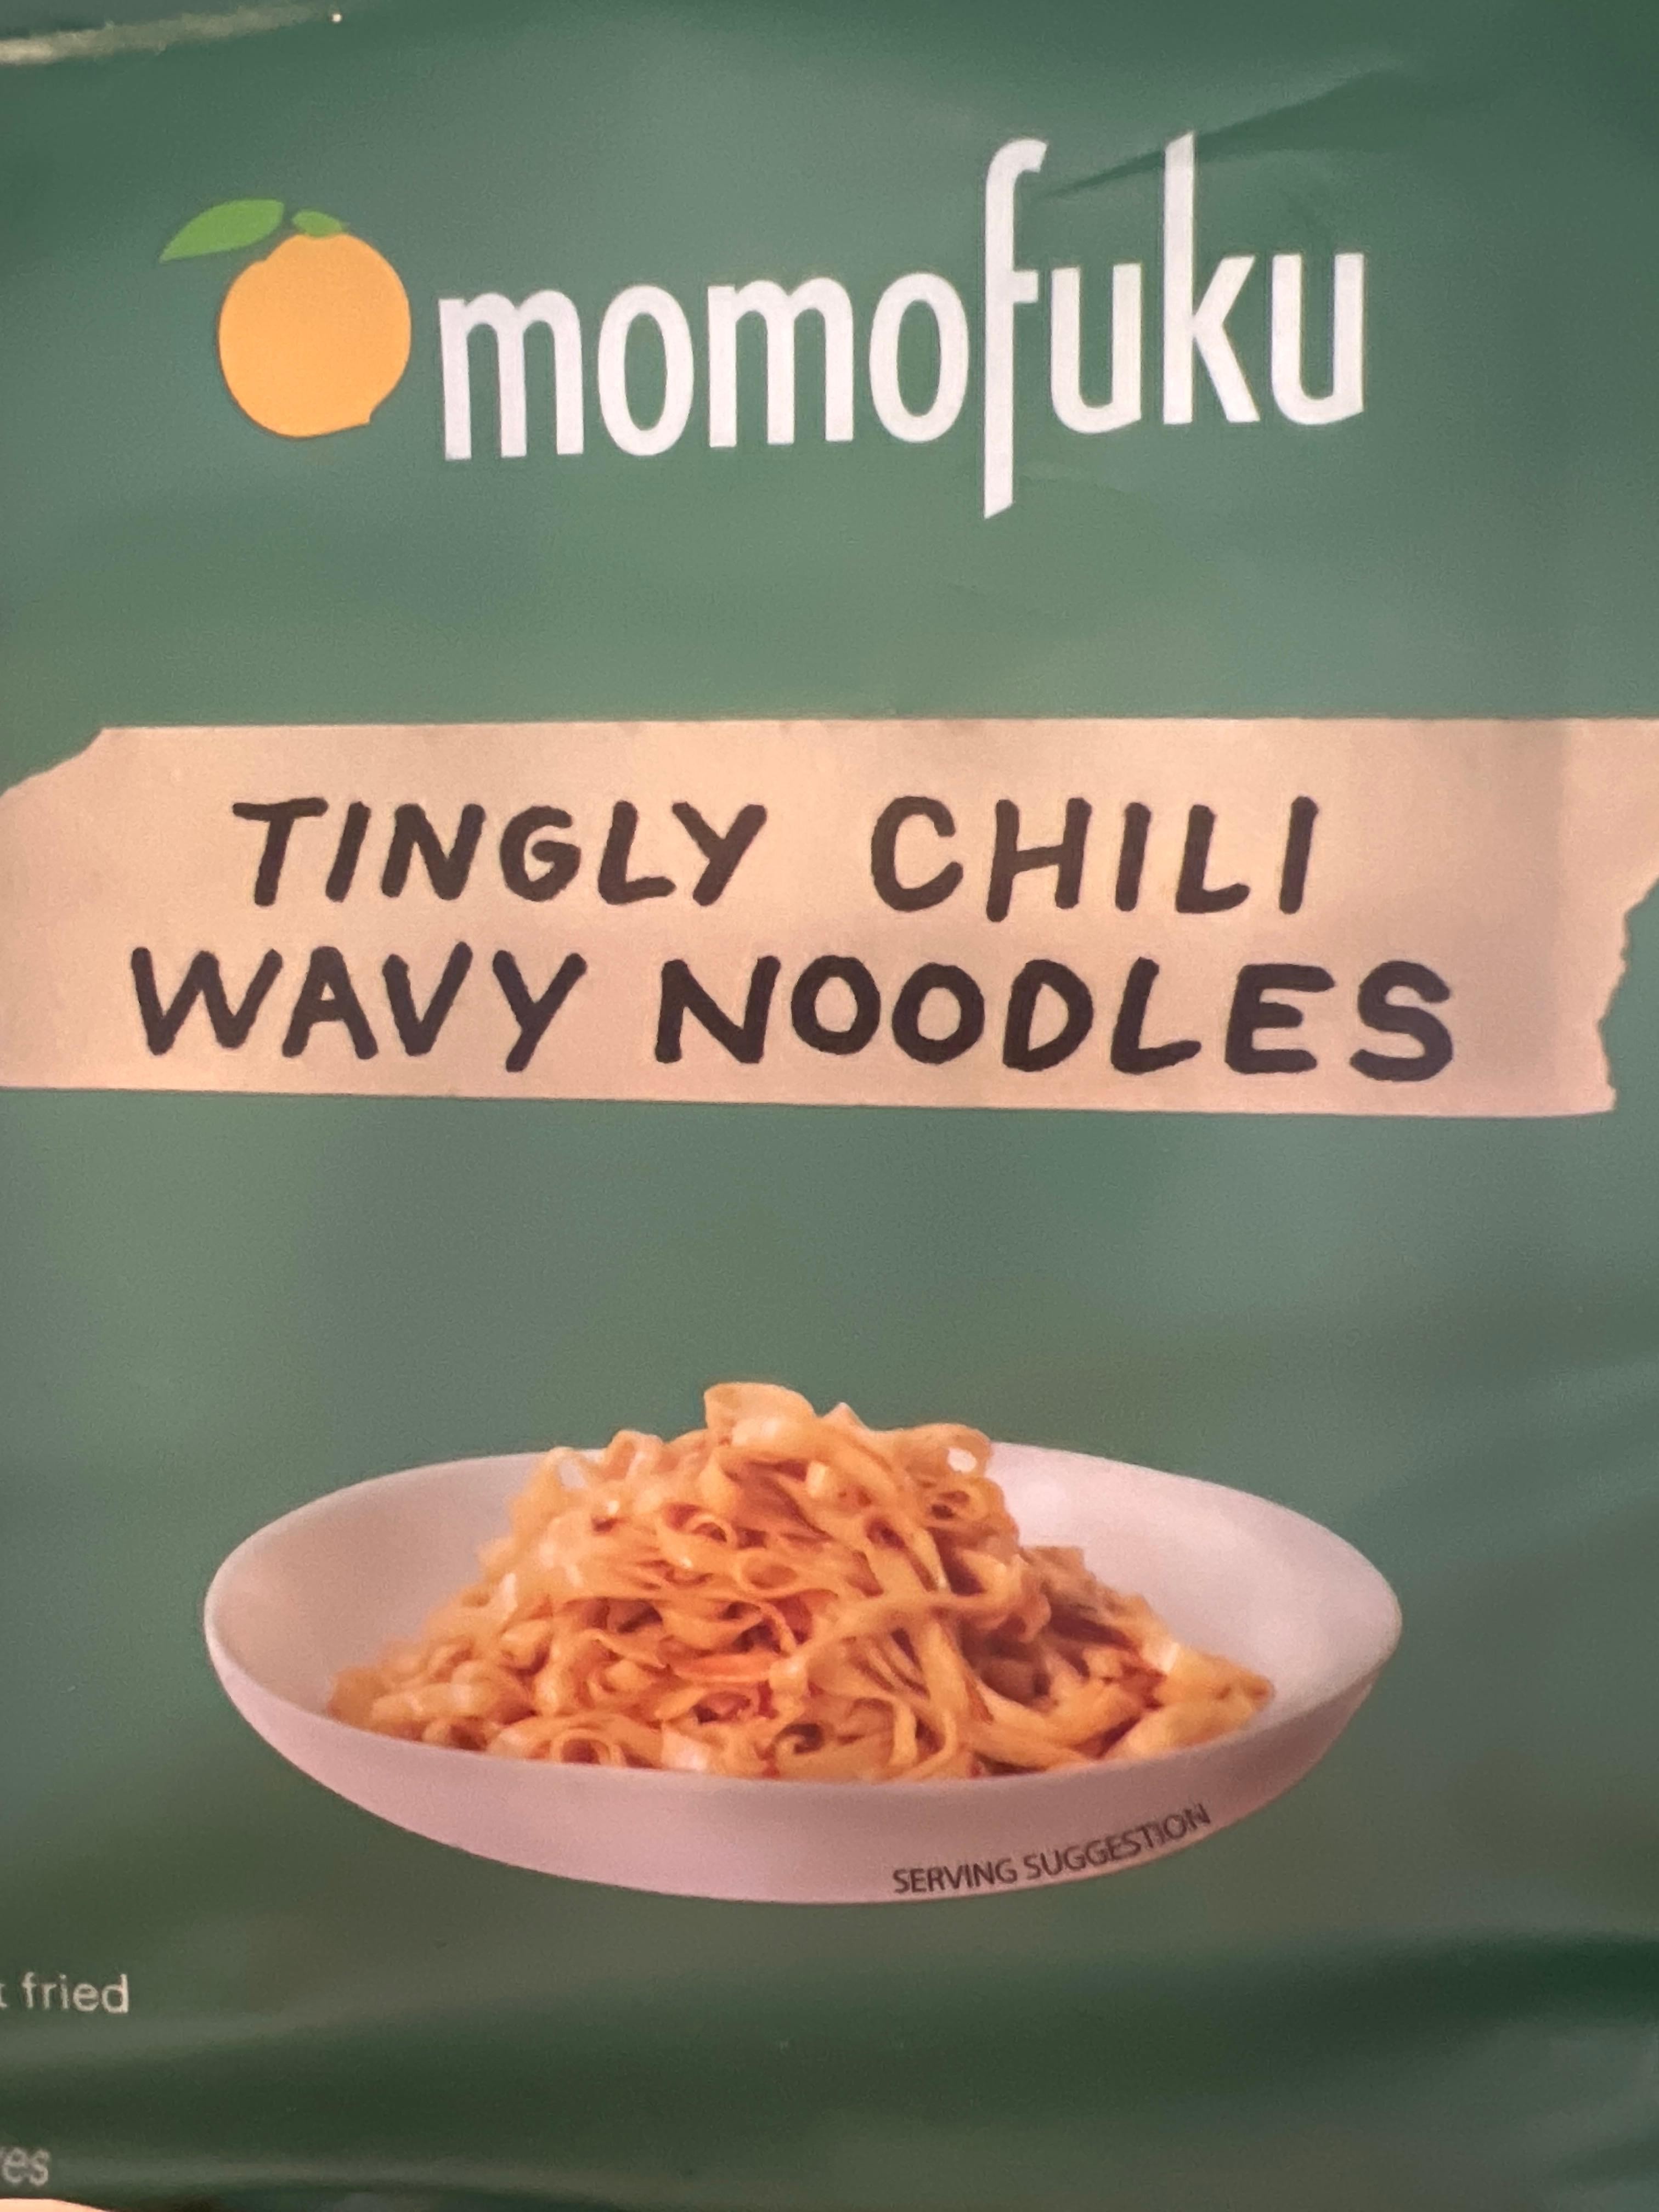 MOMOFUKU TINGLY CHILI NOODLES